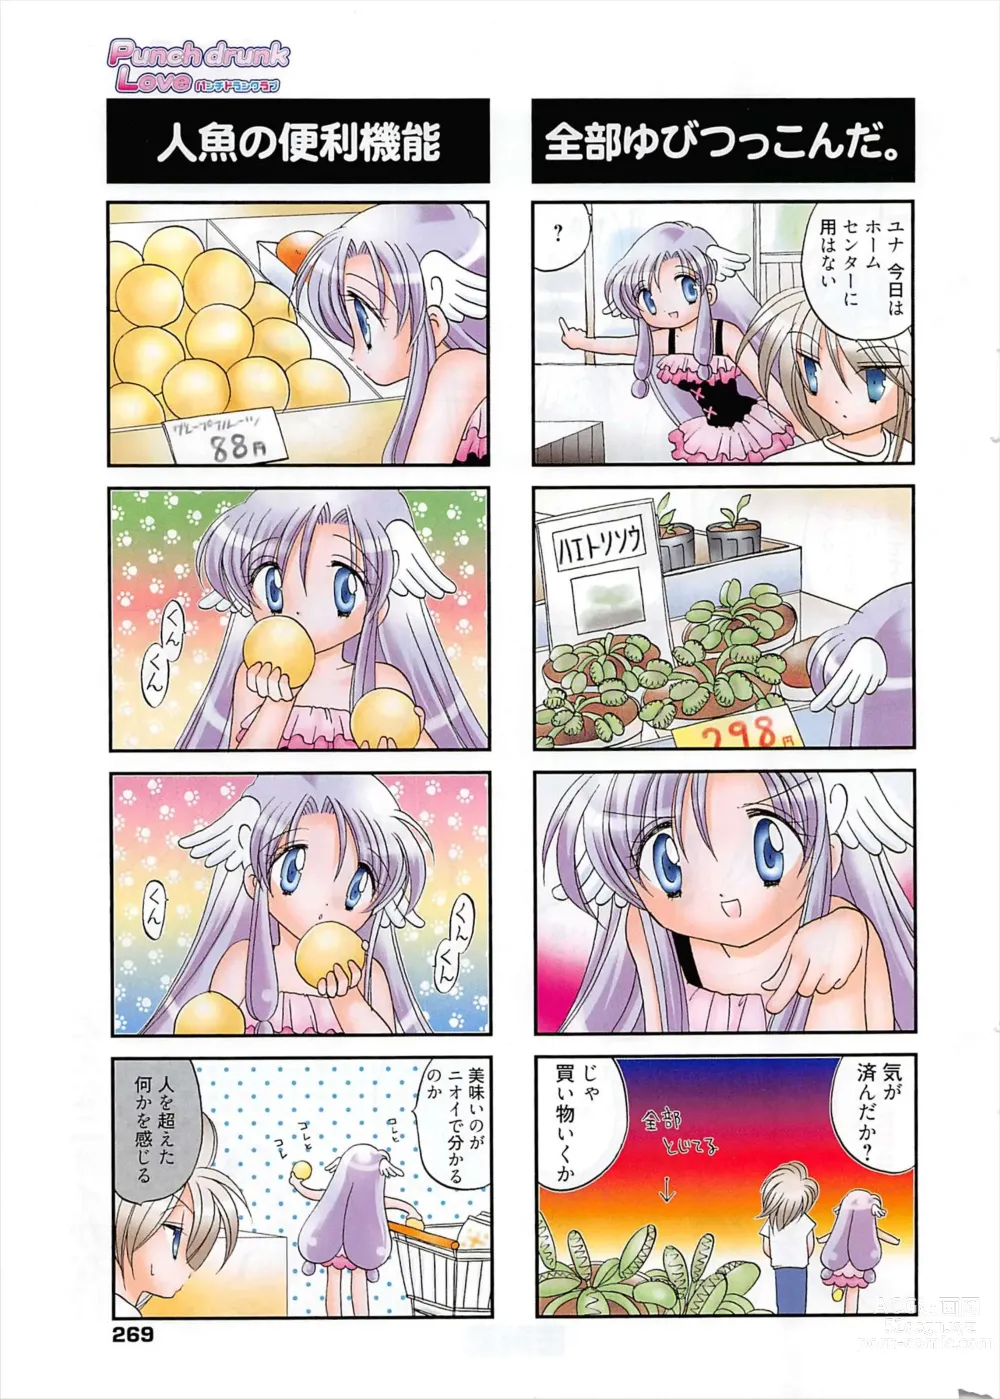 Page 268 of manga Manga Bangaichi 2011-04